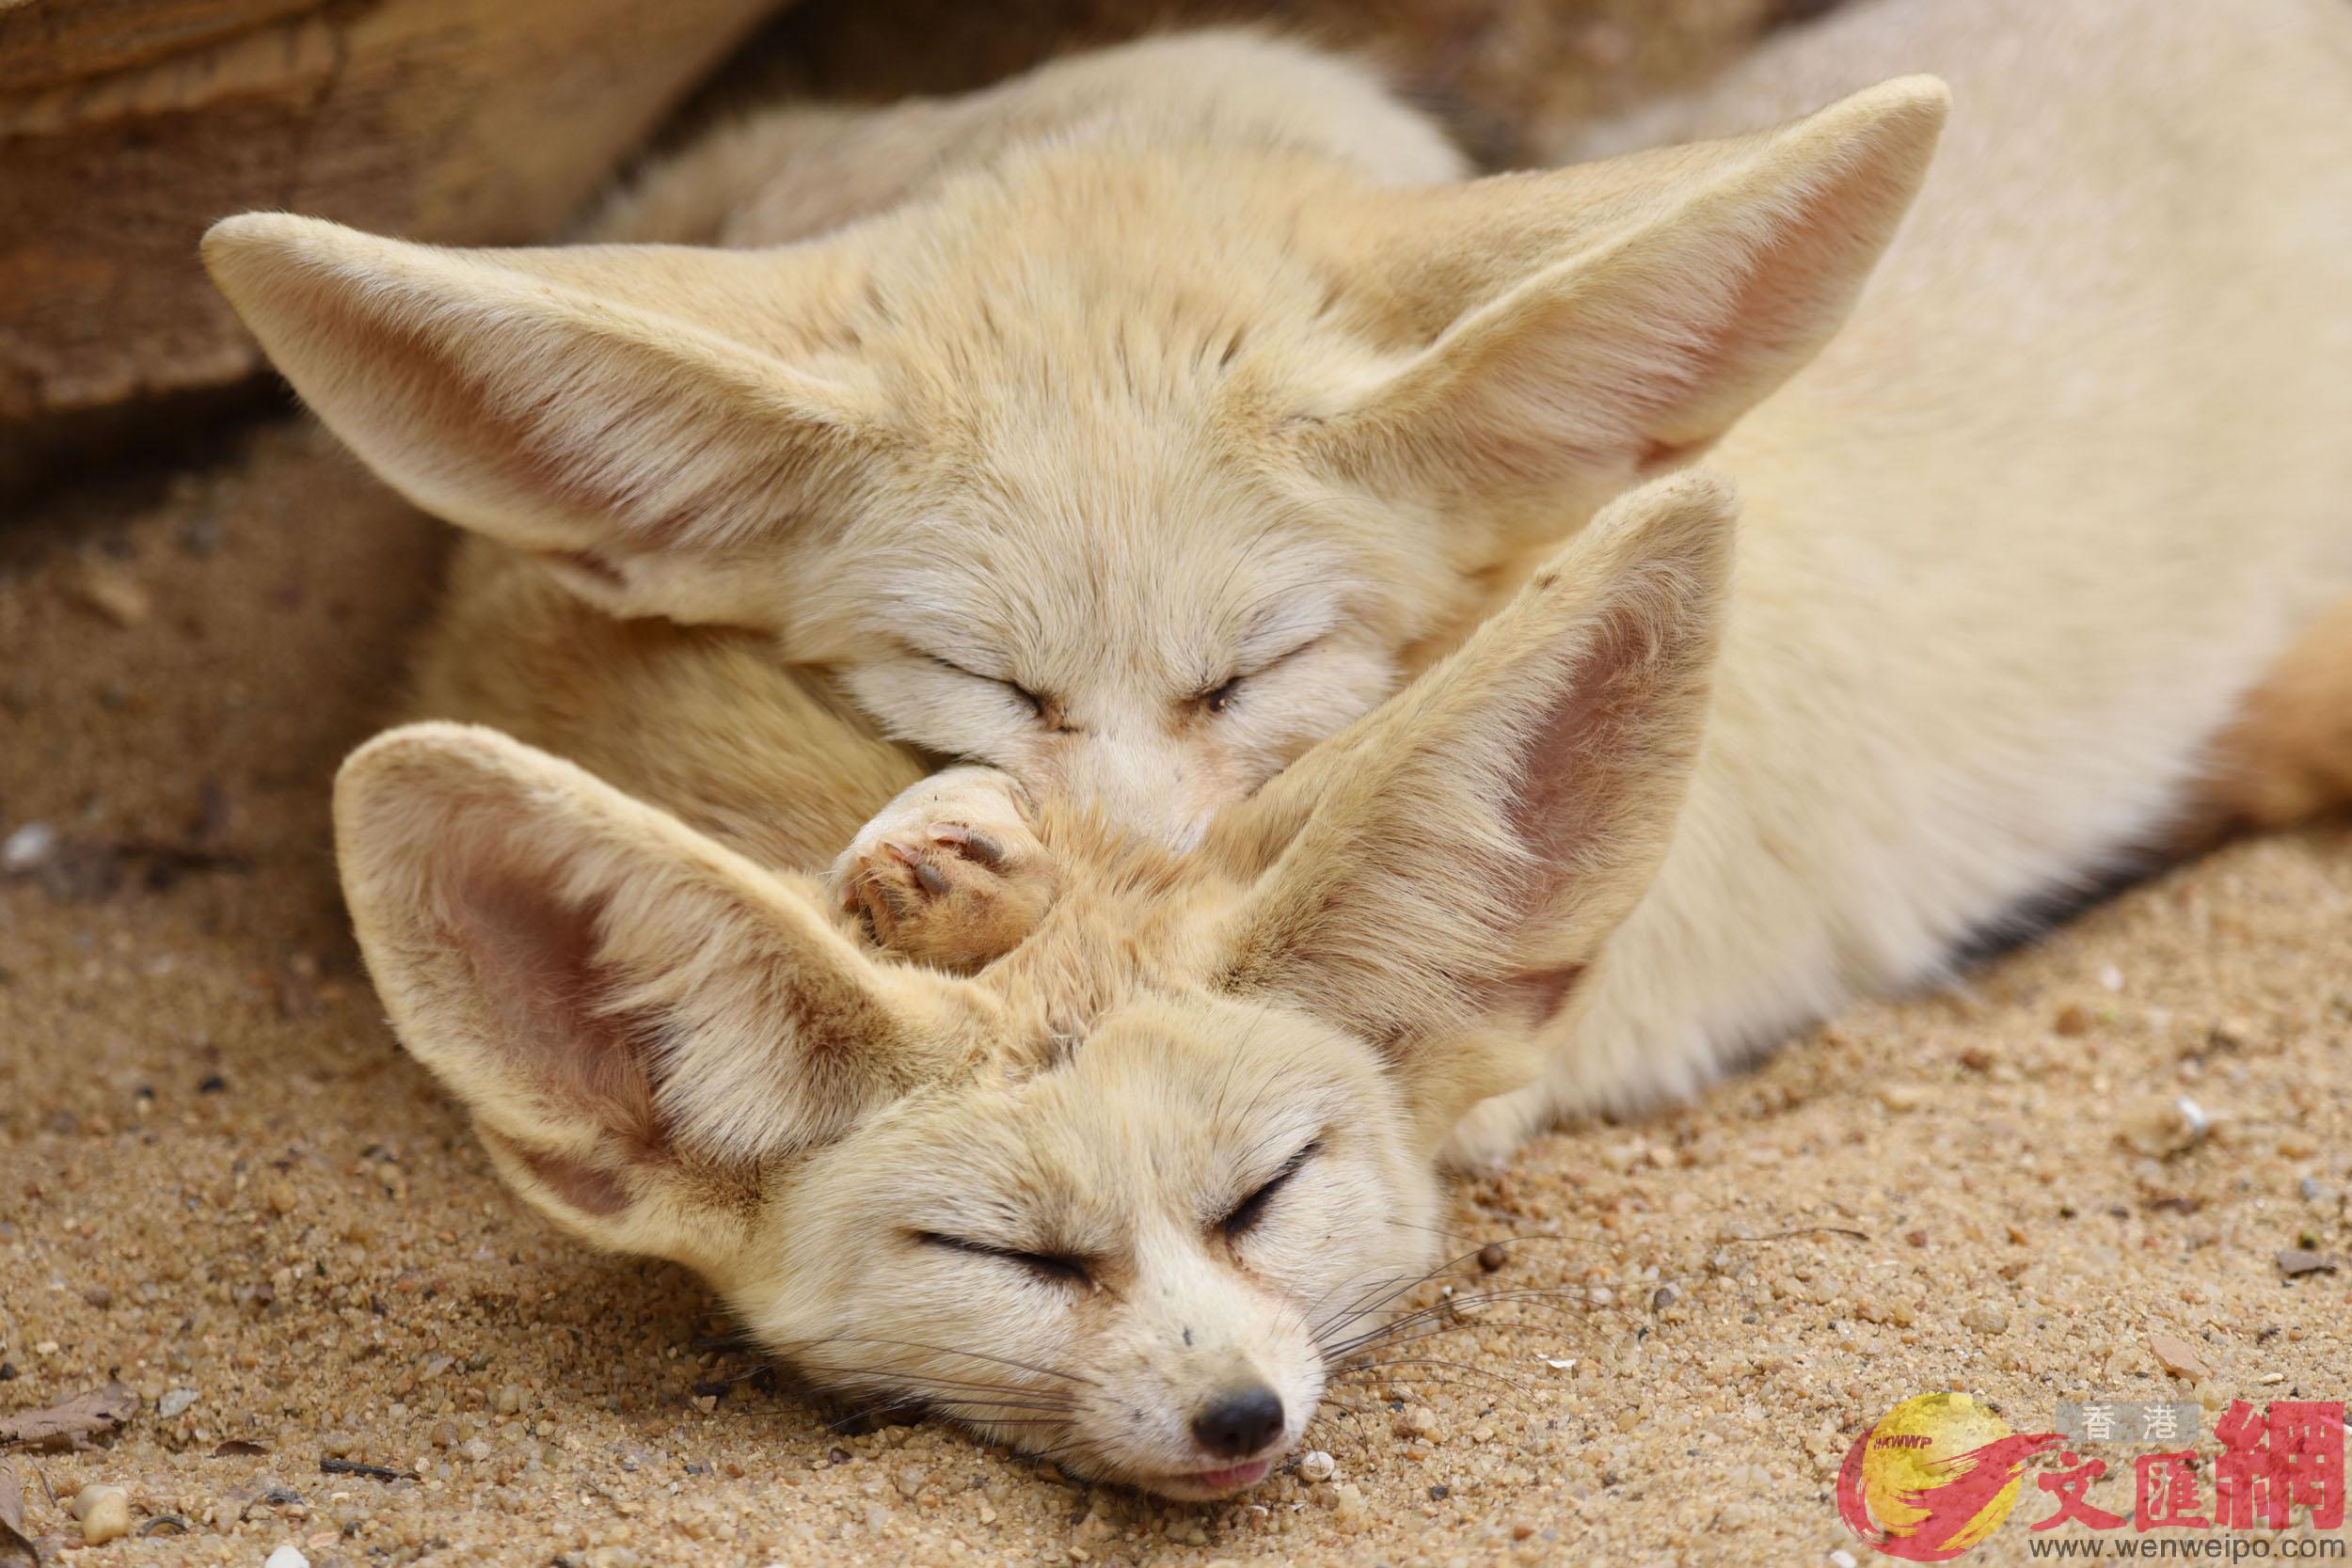 耳廓狐伴侶幸福地睡在一起A可謂u同床共枕vC]記者 郭若溪 攝^